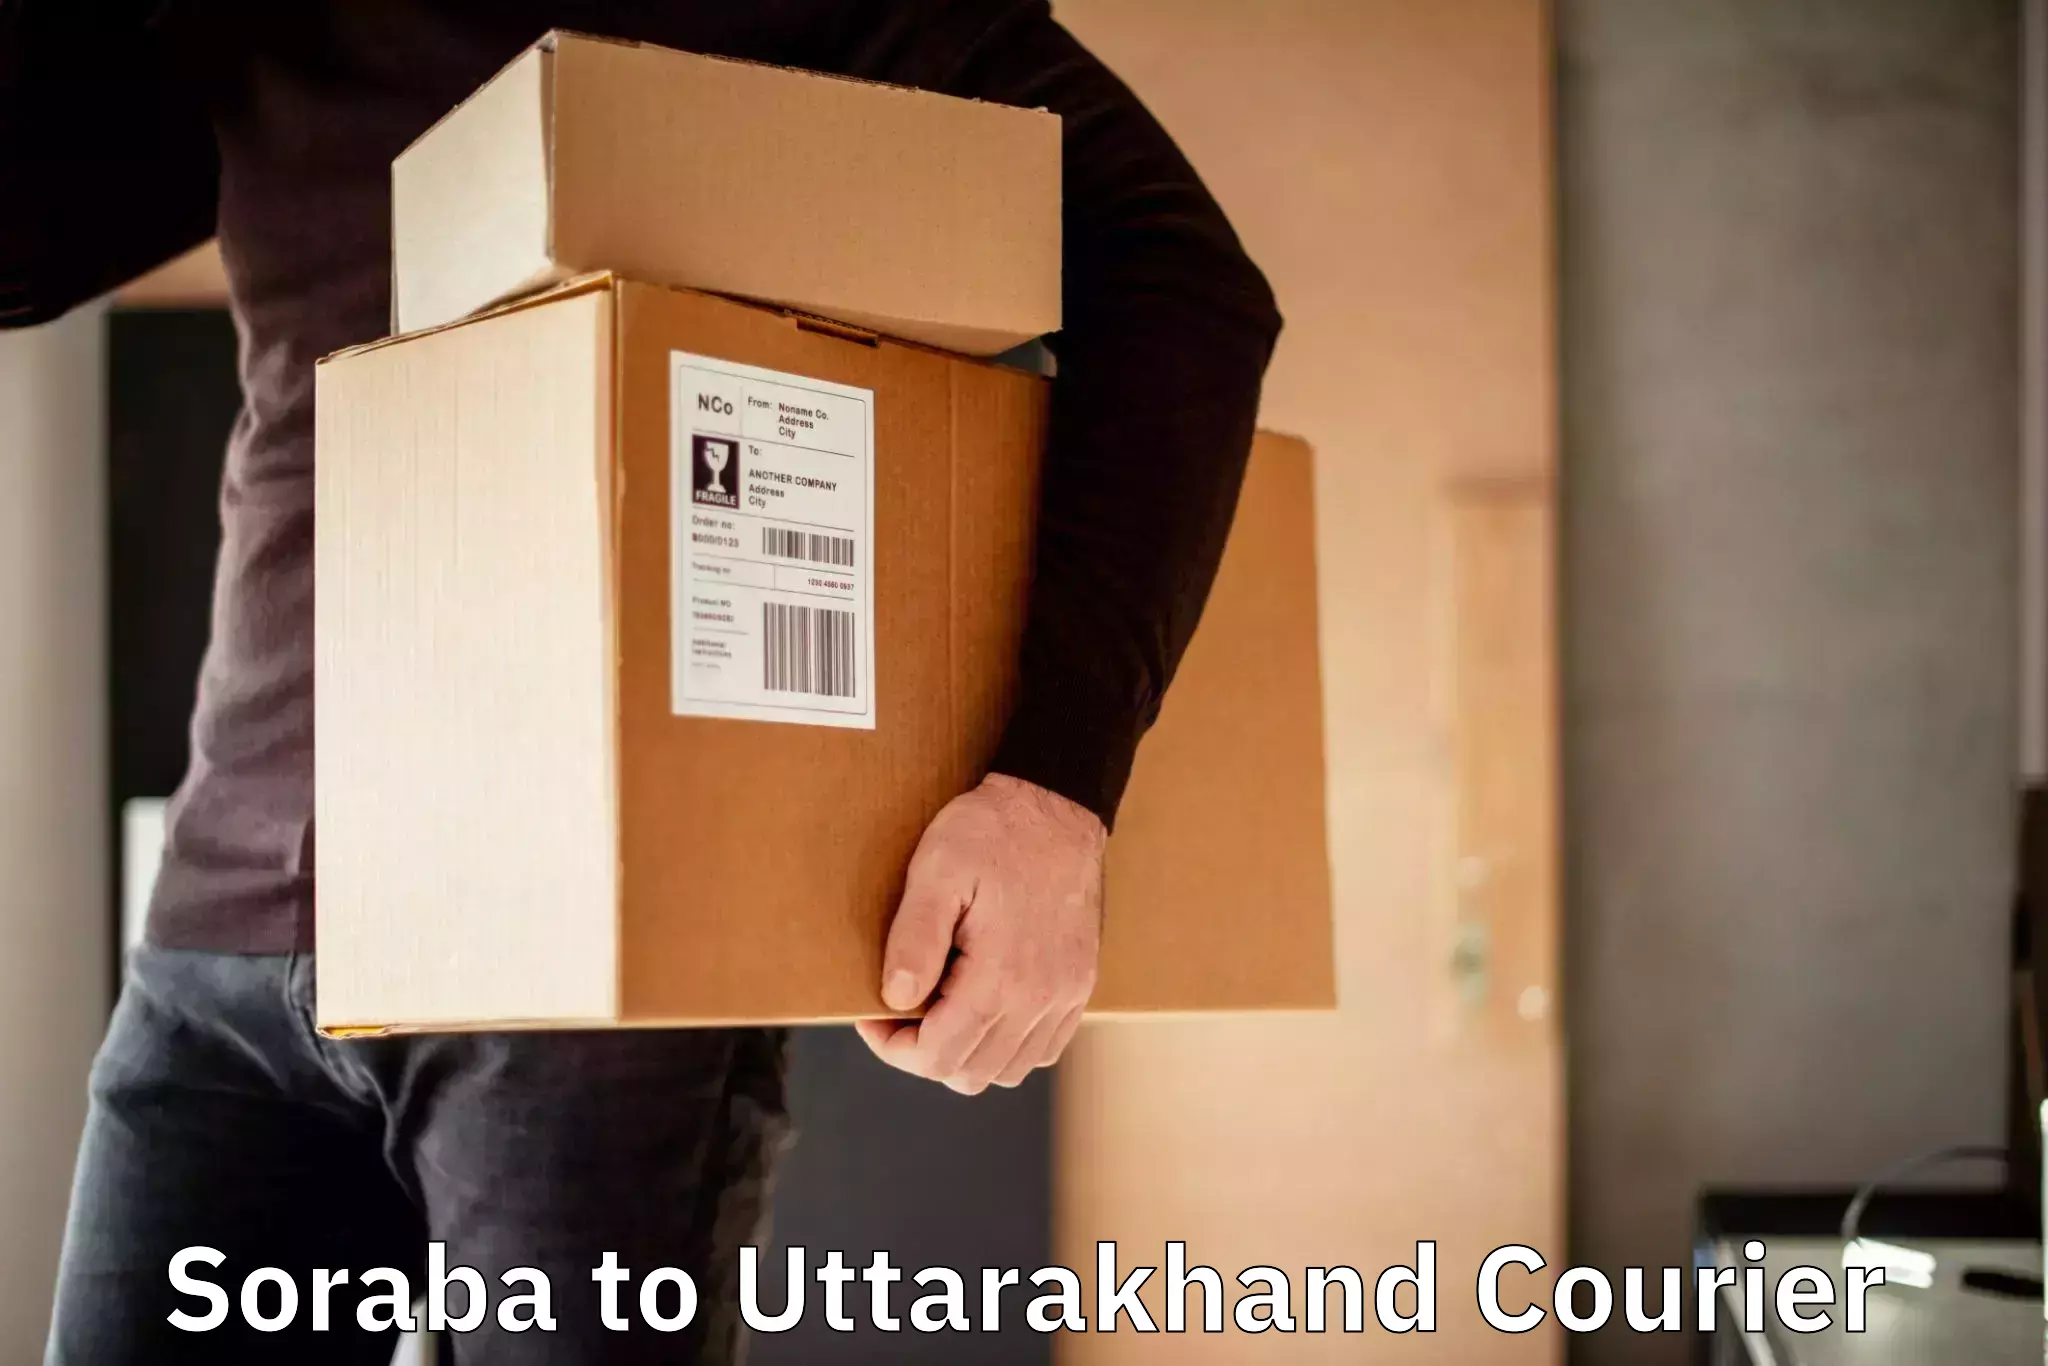 Lightweight parcel options Soraba to Kashipur